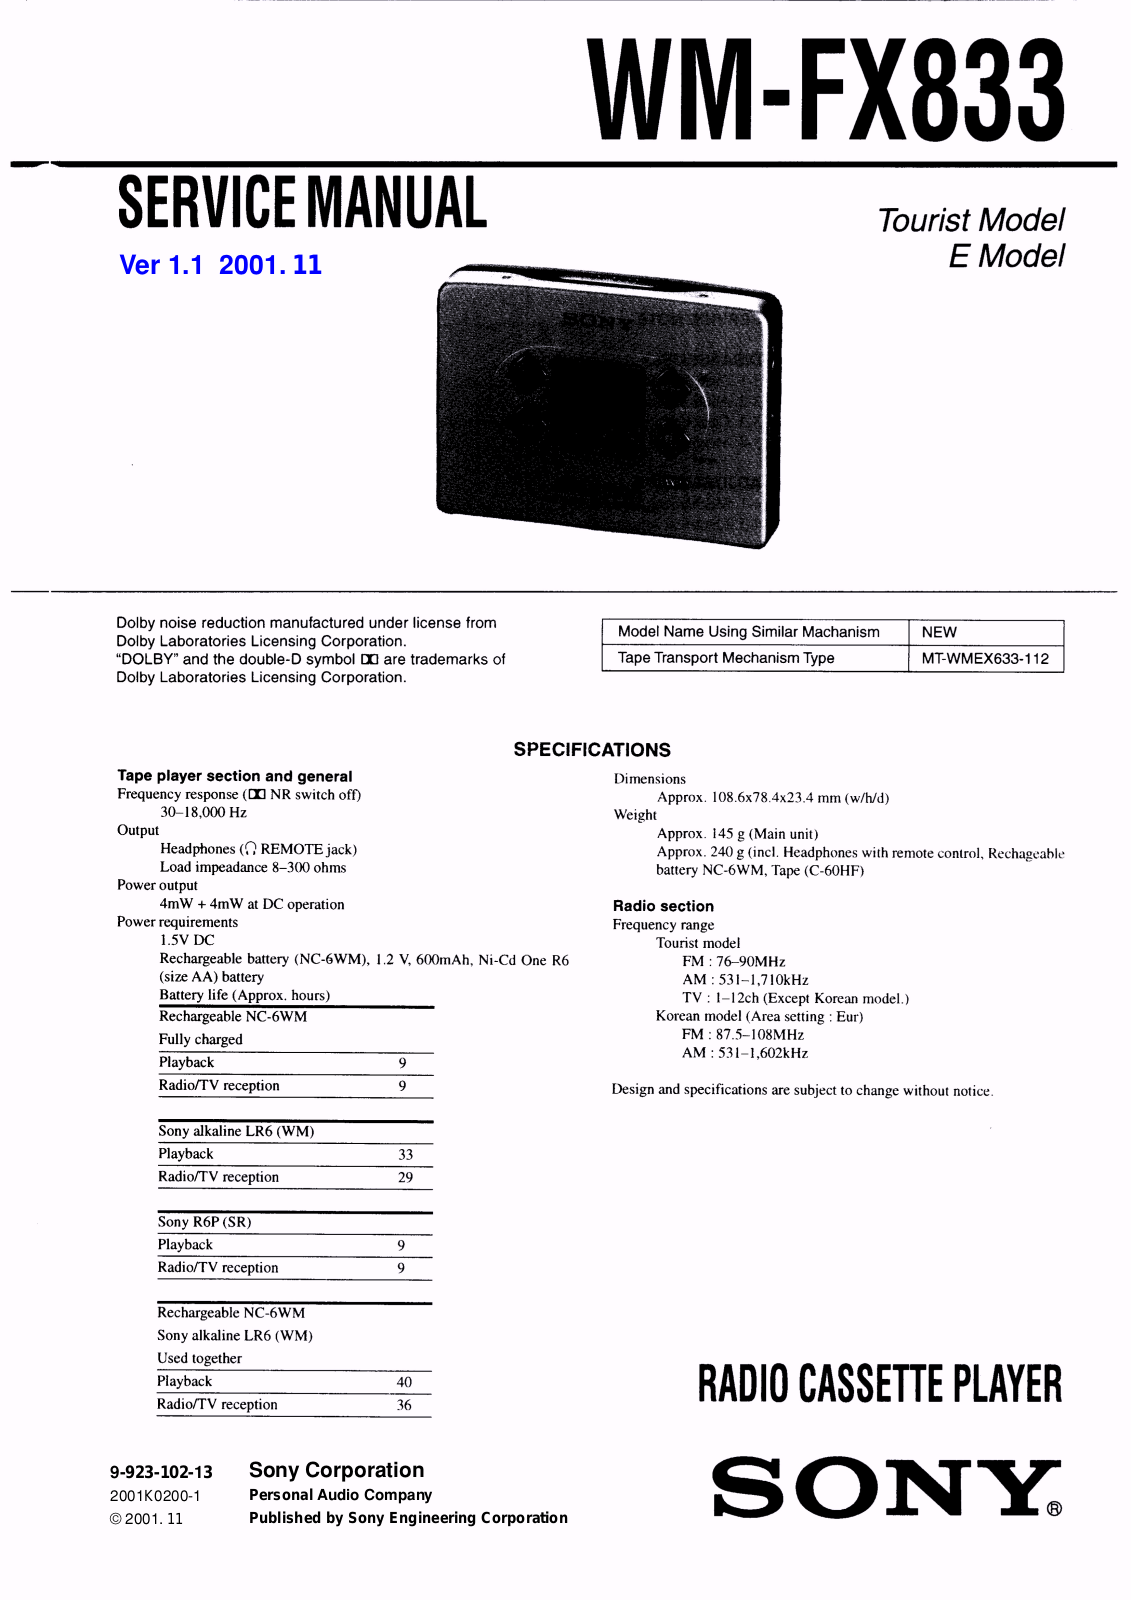 Sony WM-FX883 Service Manual